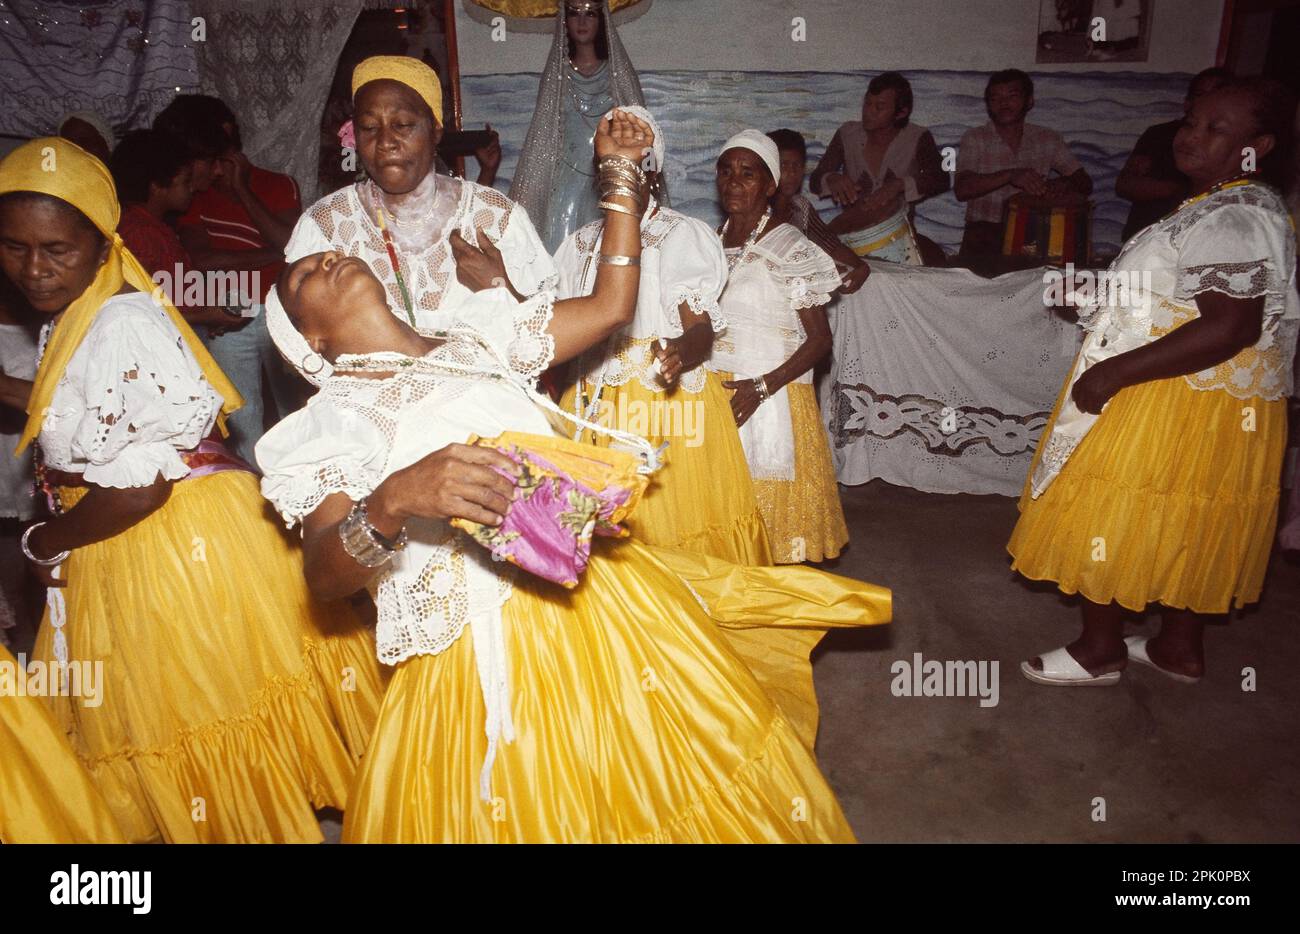 Tambor de Mina, synkretische afro-brasilianische Geistesbesessenheit Religion. Ein "Filha de santo" (Sektenmitglied) geht in Trance, besessen von einem Geist. Stockfoto